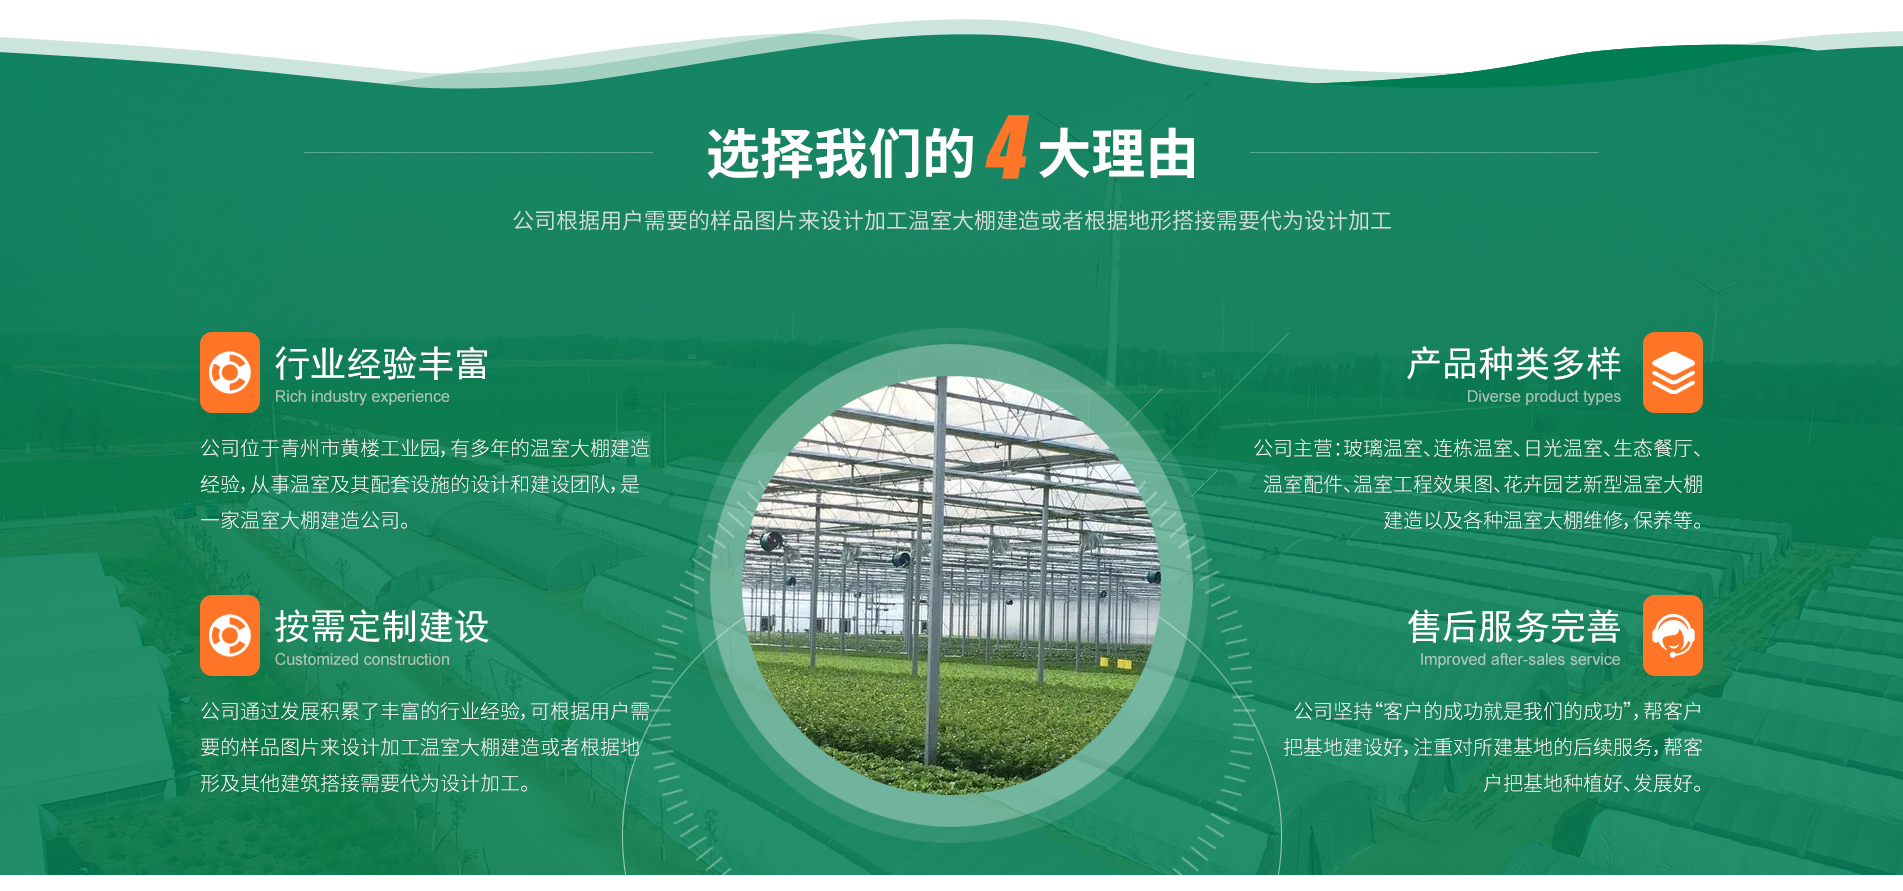 青州市明增温室工程有限公司